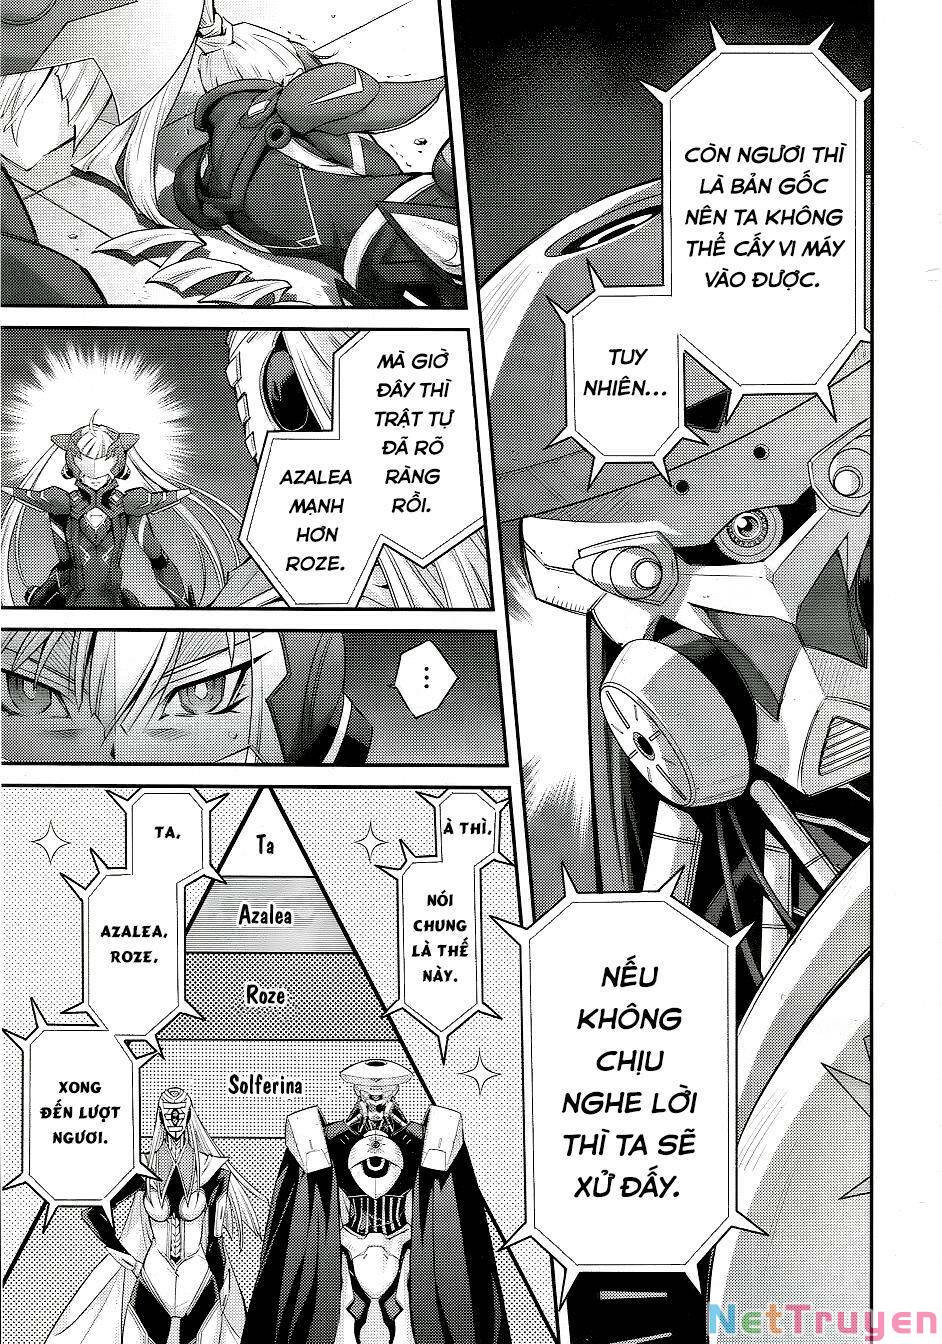 Yu-Gi-Oh! OCG Stories: Chapter 10